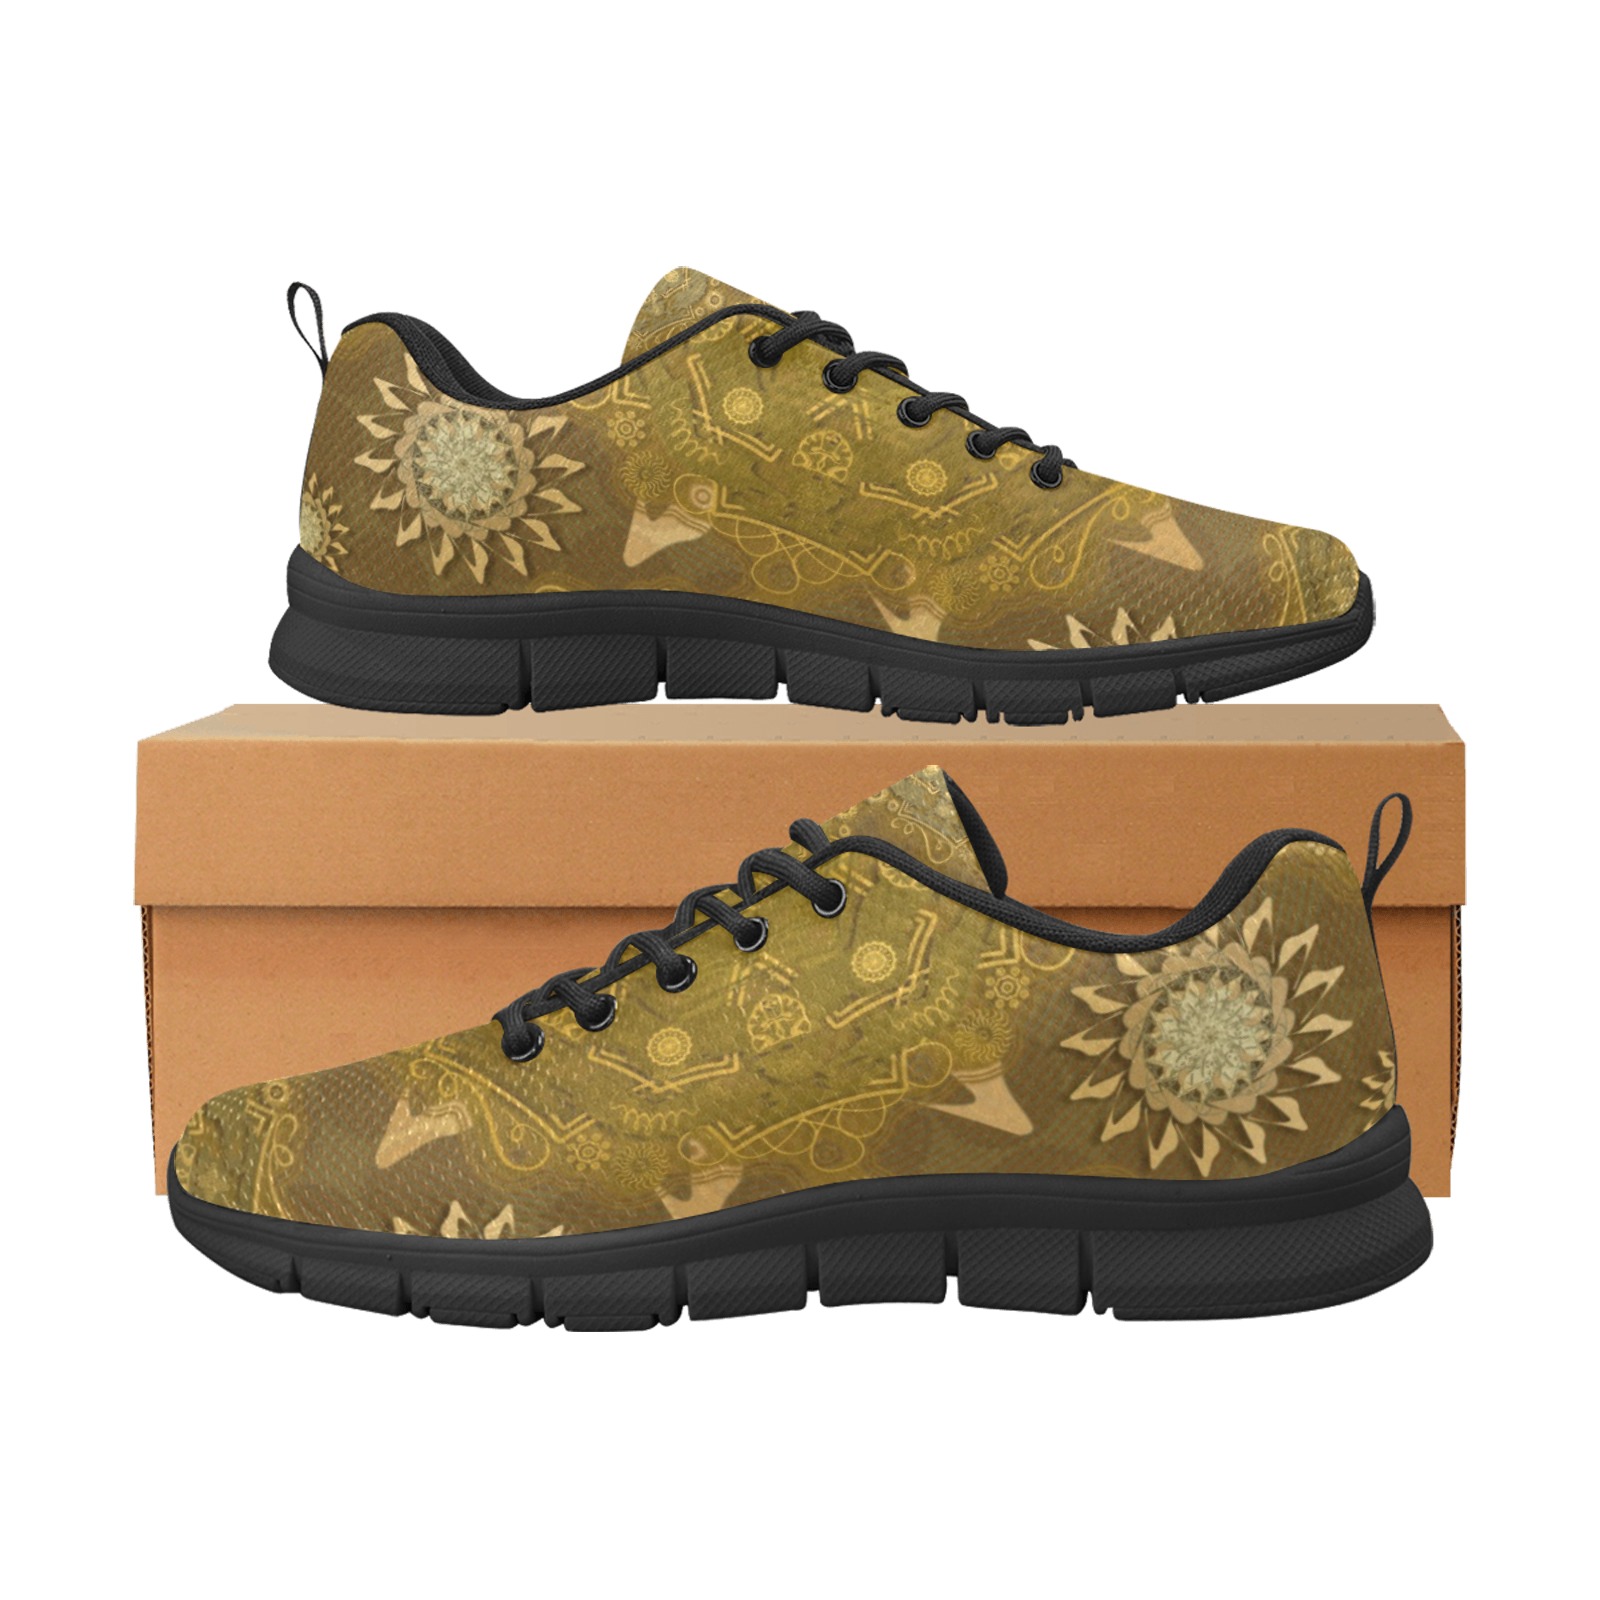 Modern hexa golden ursidae mandala art Men's Breathable Running Shoes (Model 055)